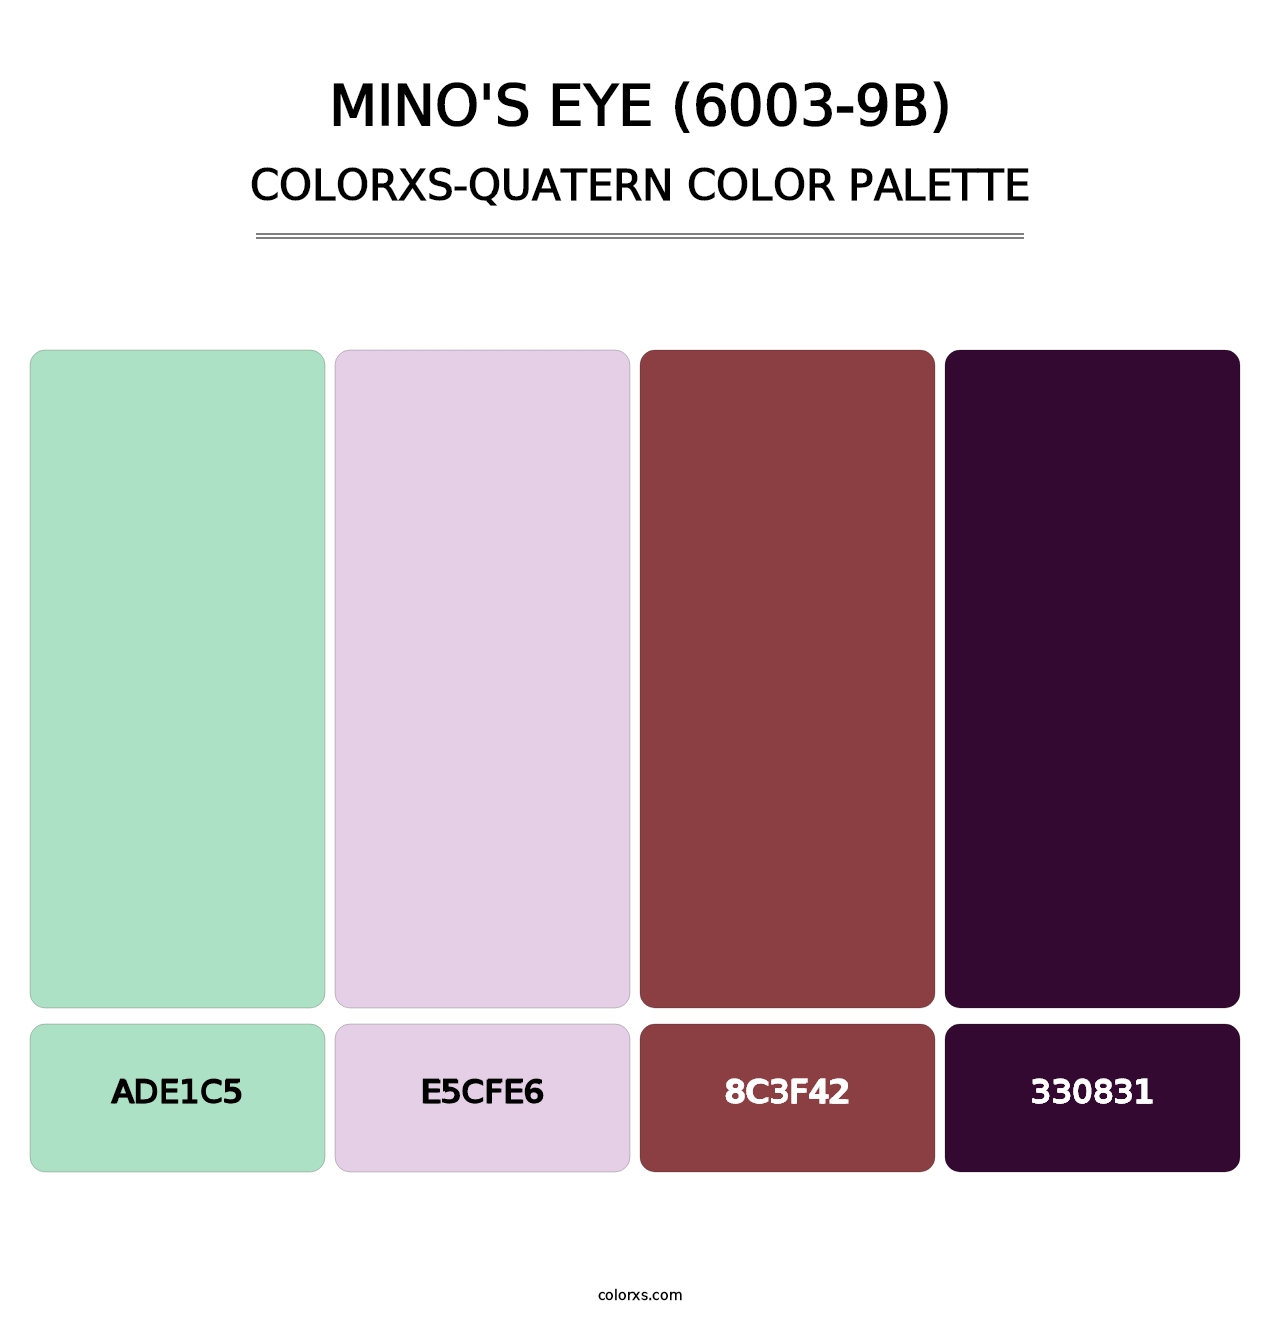 Mino's Eye (6003-9B) - Colorxs Quatern Palette